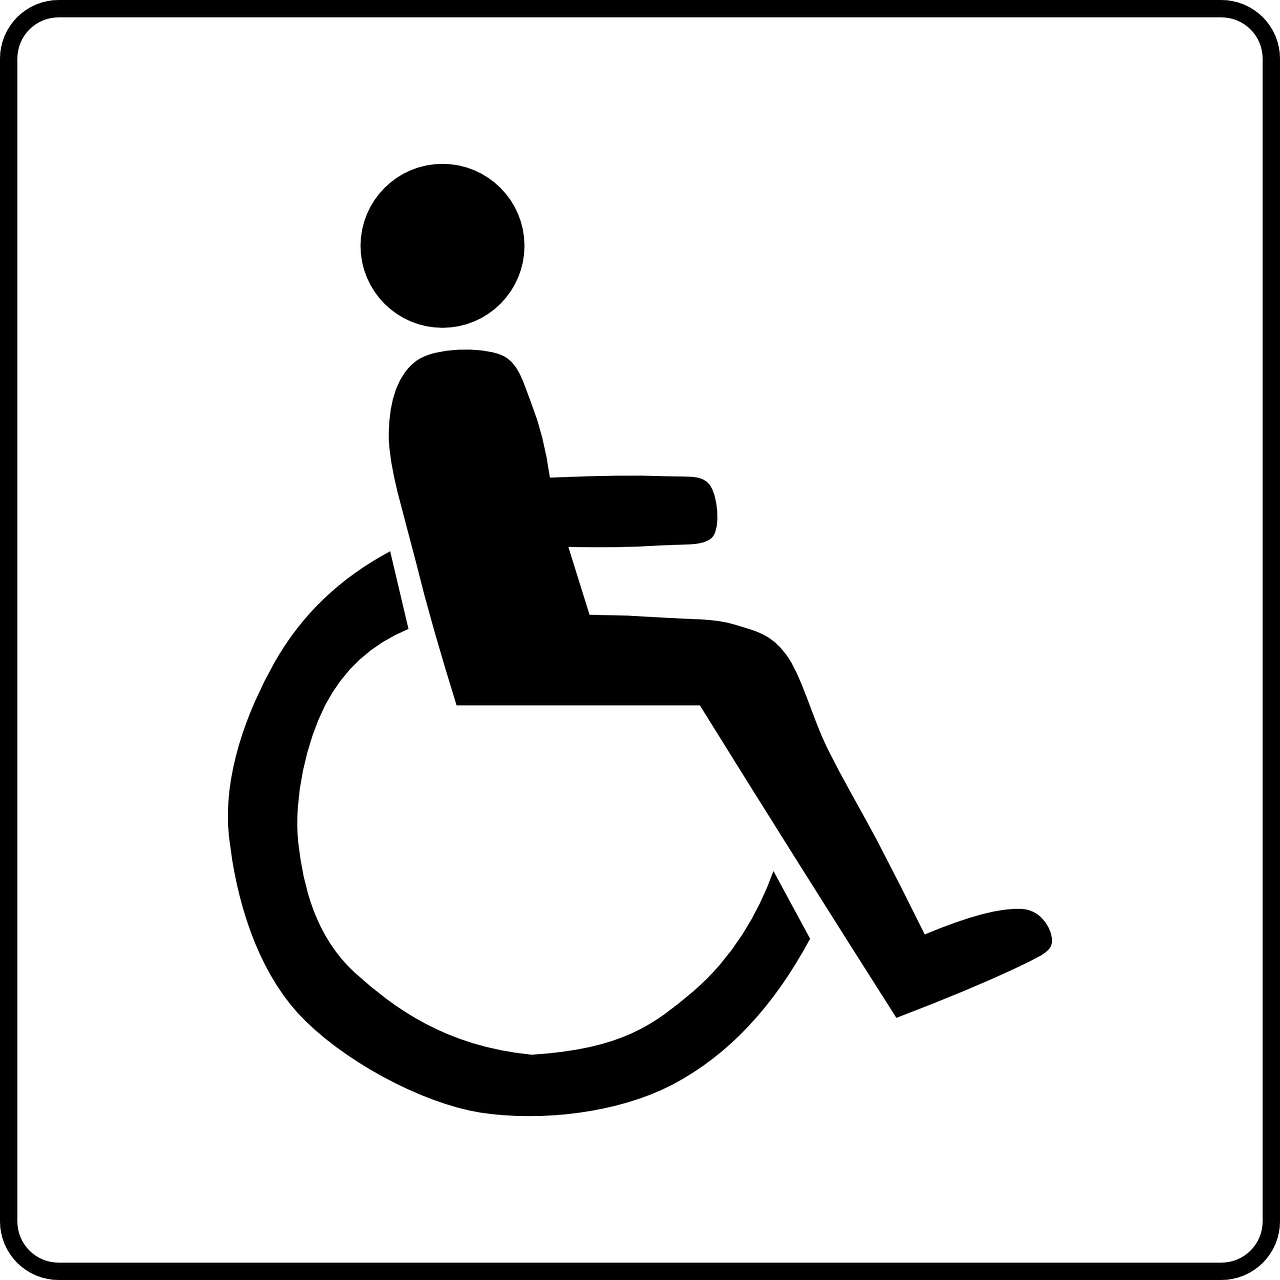 miMakker KNOT ervaringen instelling gehandicaptenzorg verstandelijk gehandicapten